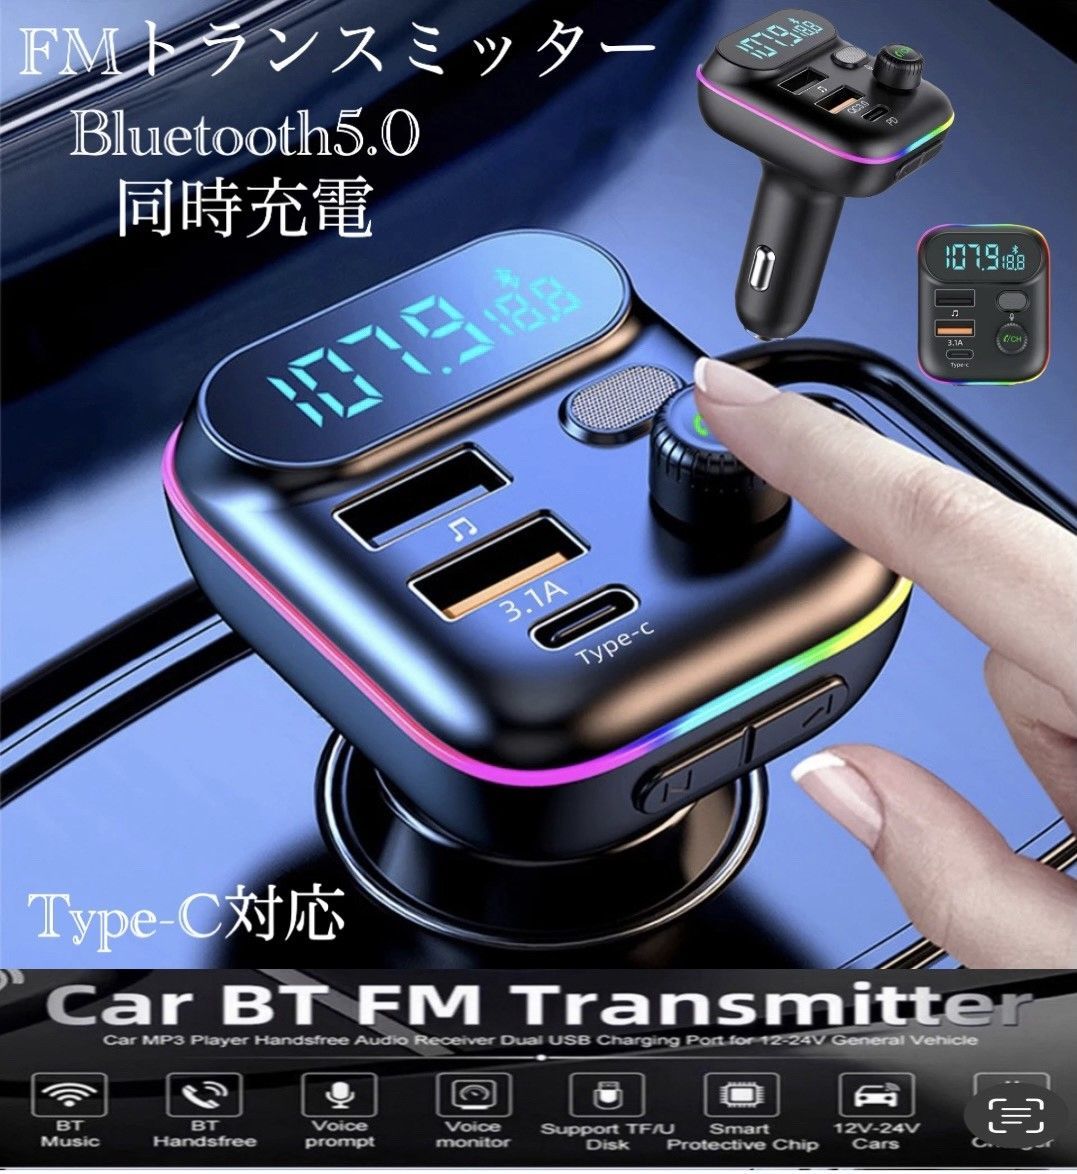 FMトランスミッターBluetooth ハンズフリー通話 USB充電ポート付き